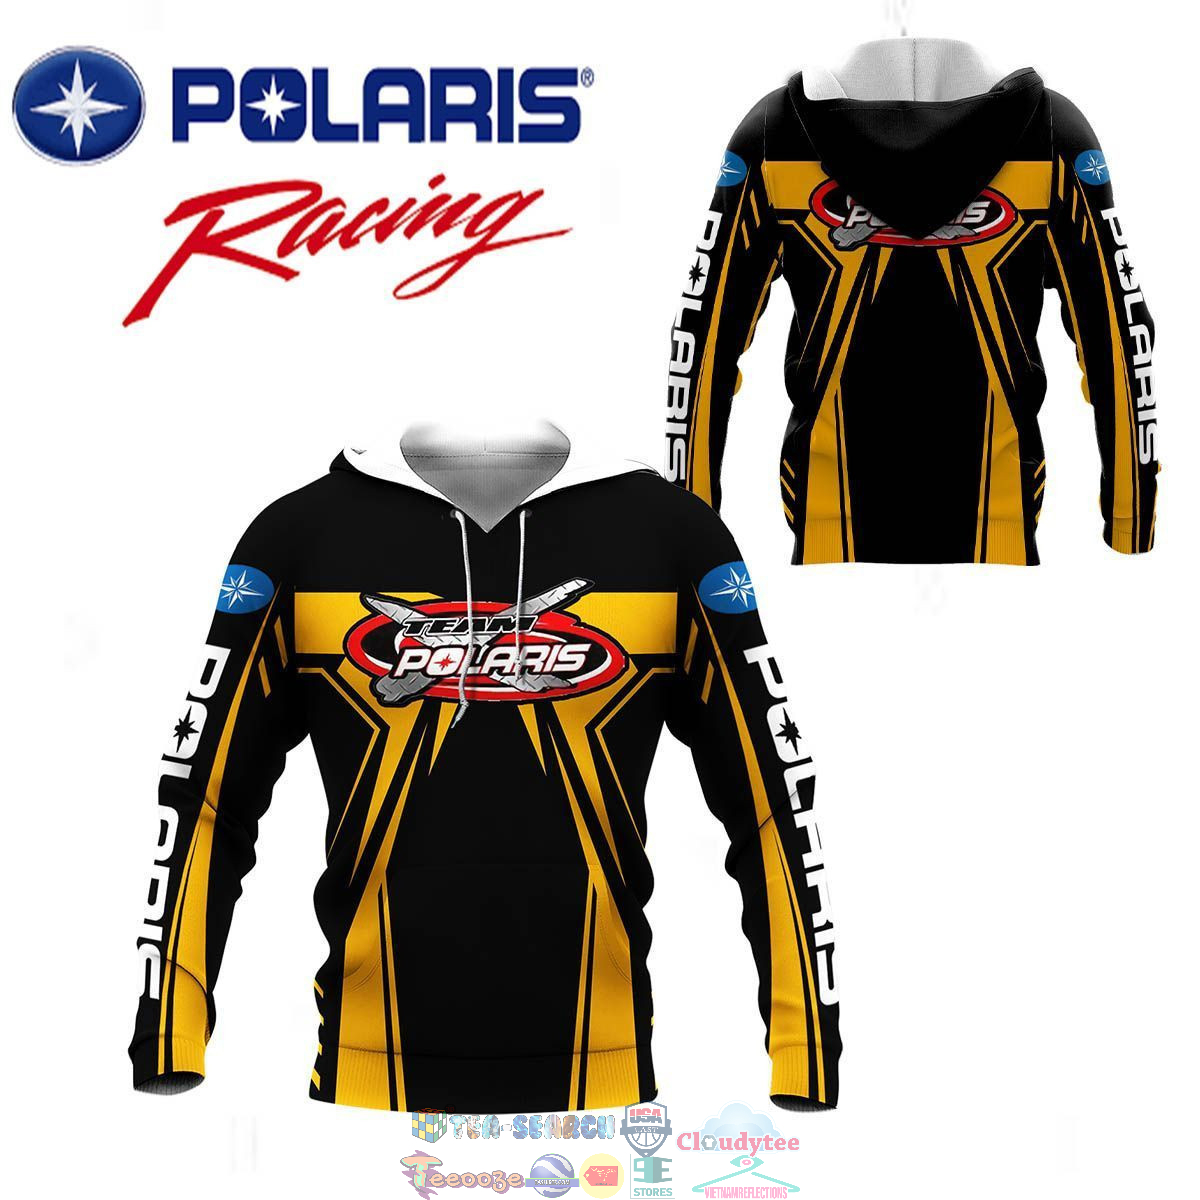 Polaris Racing Team ver 5 3D hoodie and t-shirt